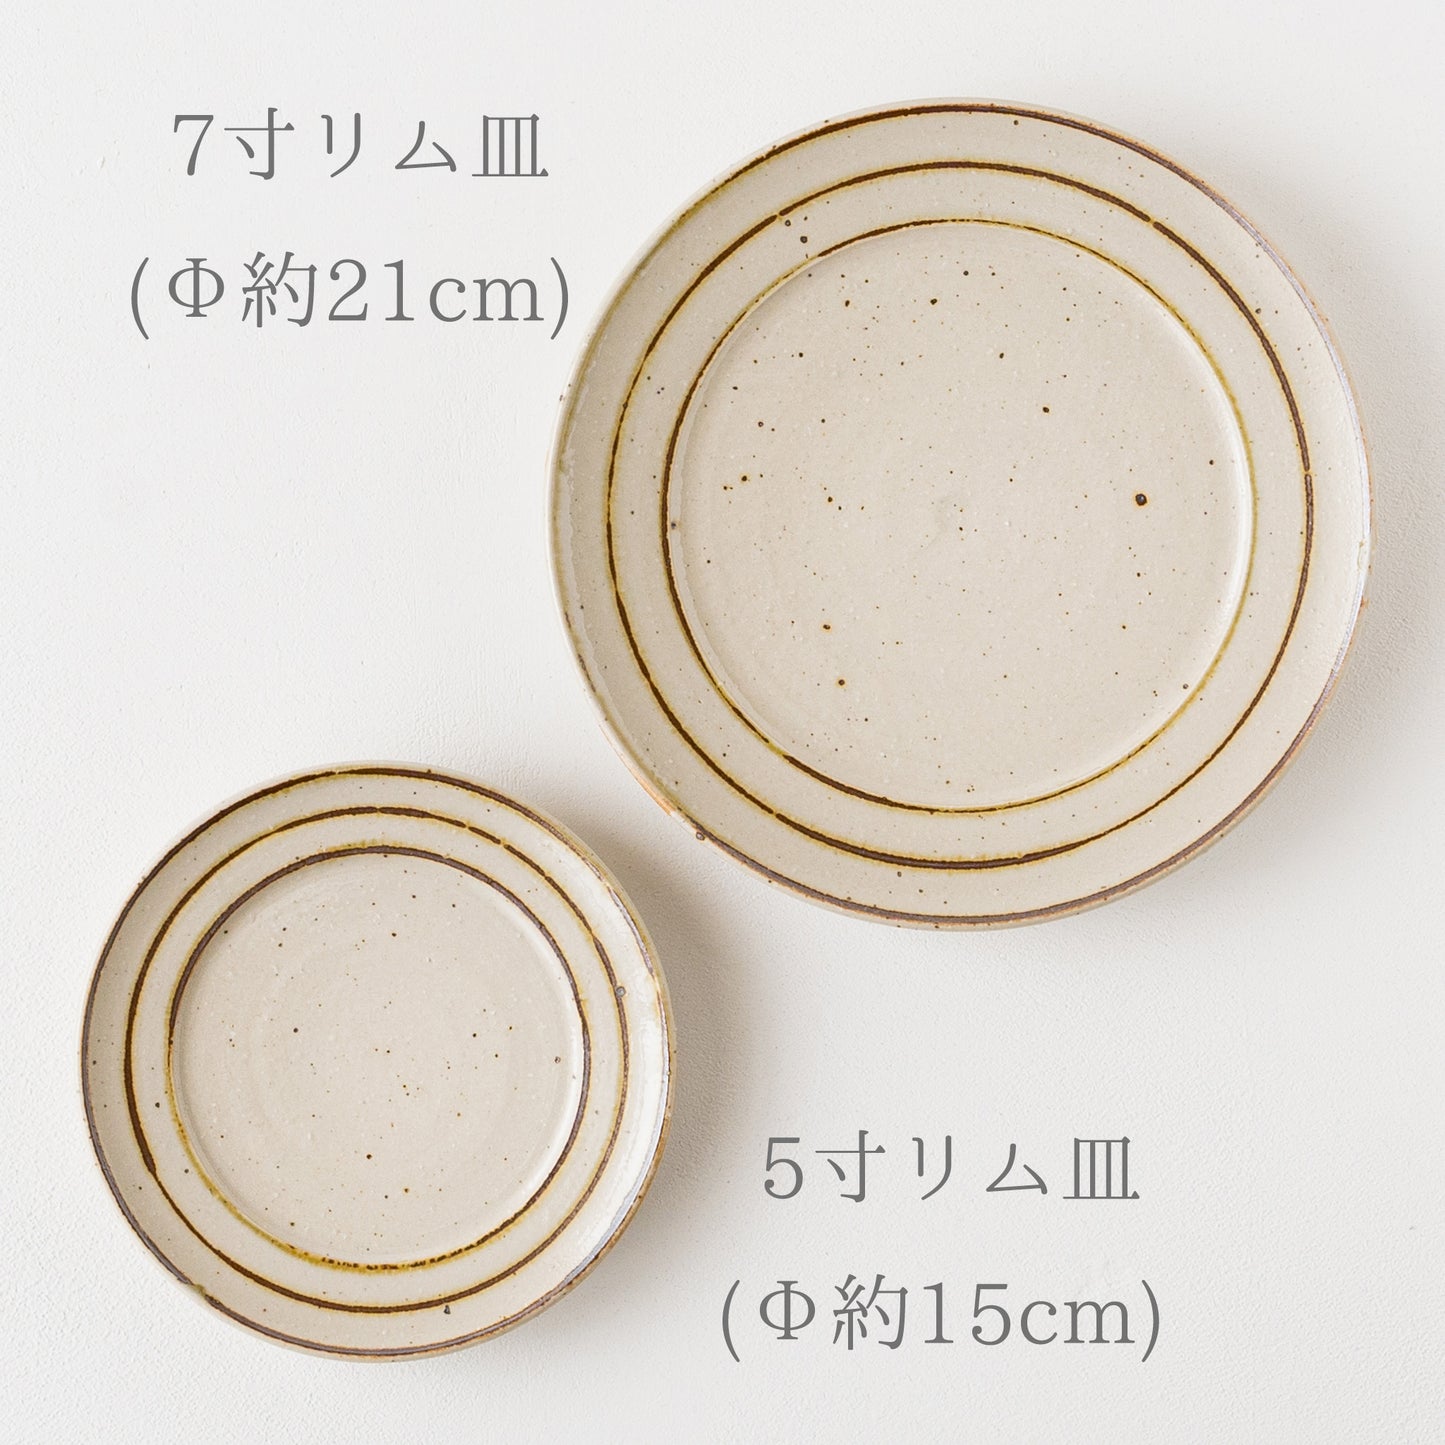 食卓を素敵に彩ってくれる冨本大輔さんの灰釉鉄絵のリム皿